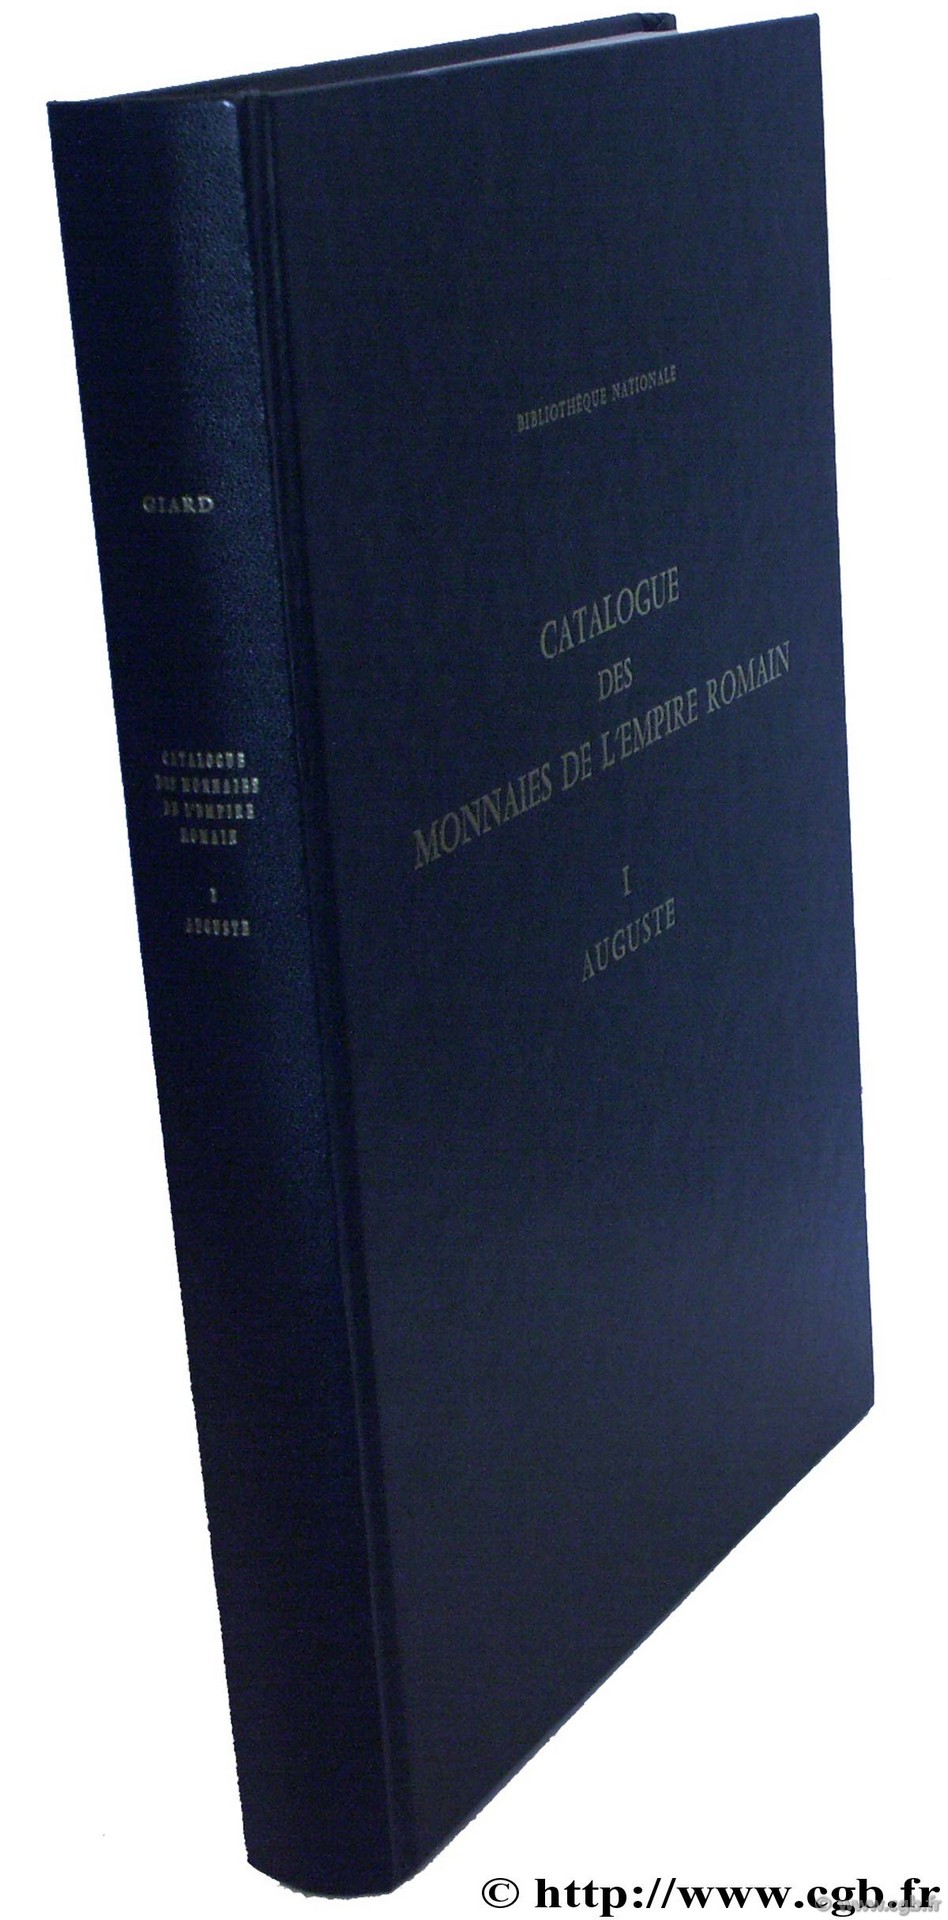 Catalogue des monnaies de l Empire Romain
 GIARD J.-B.